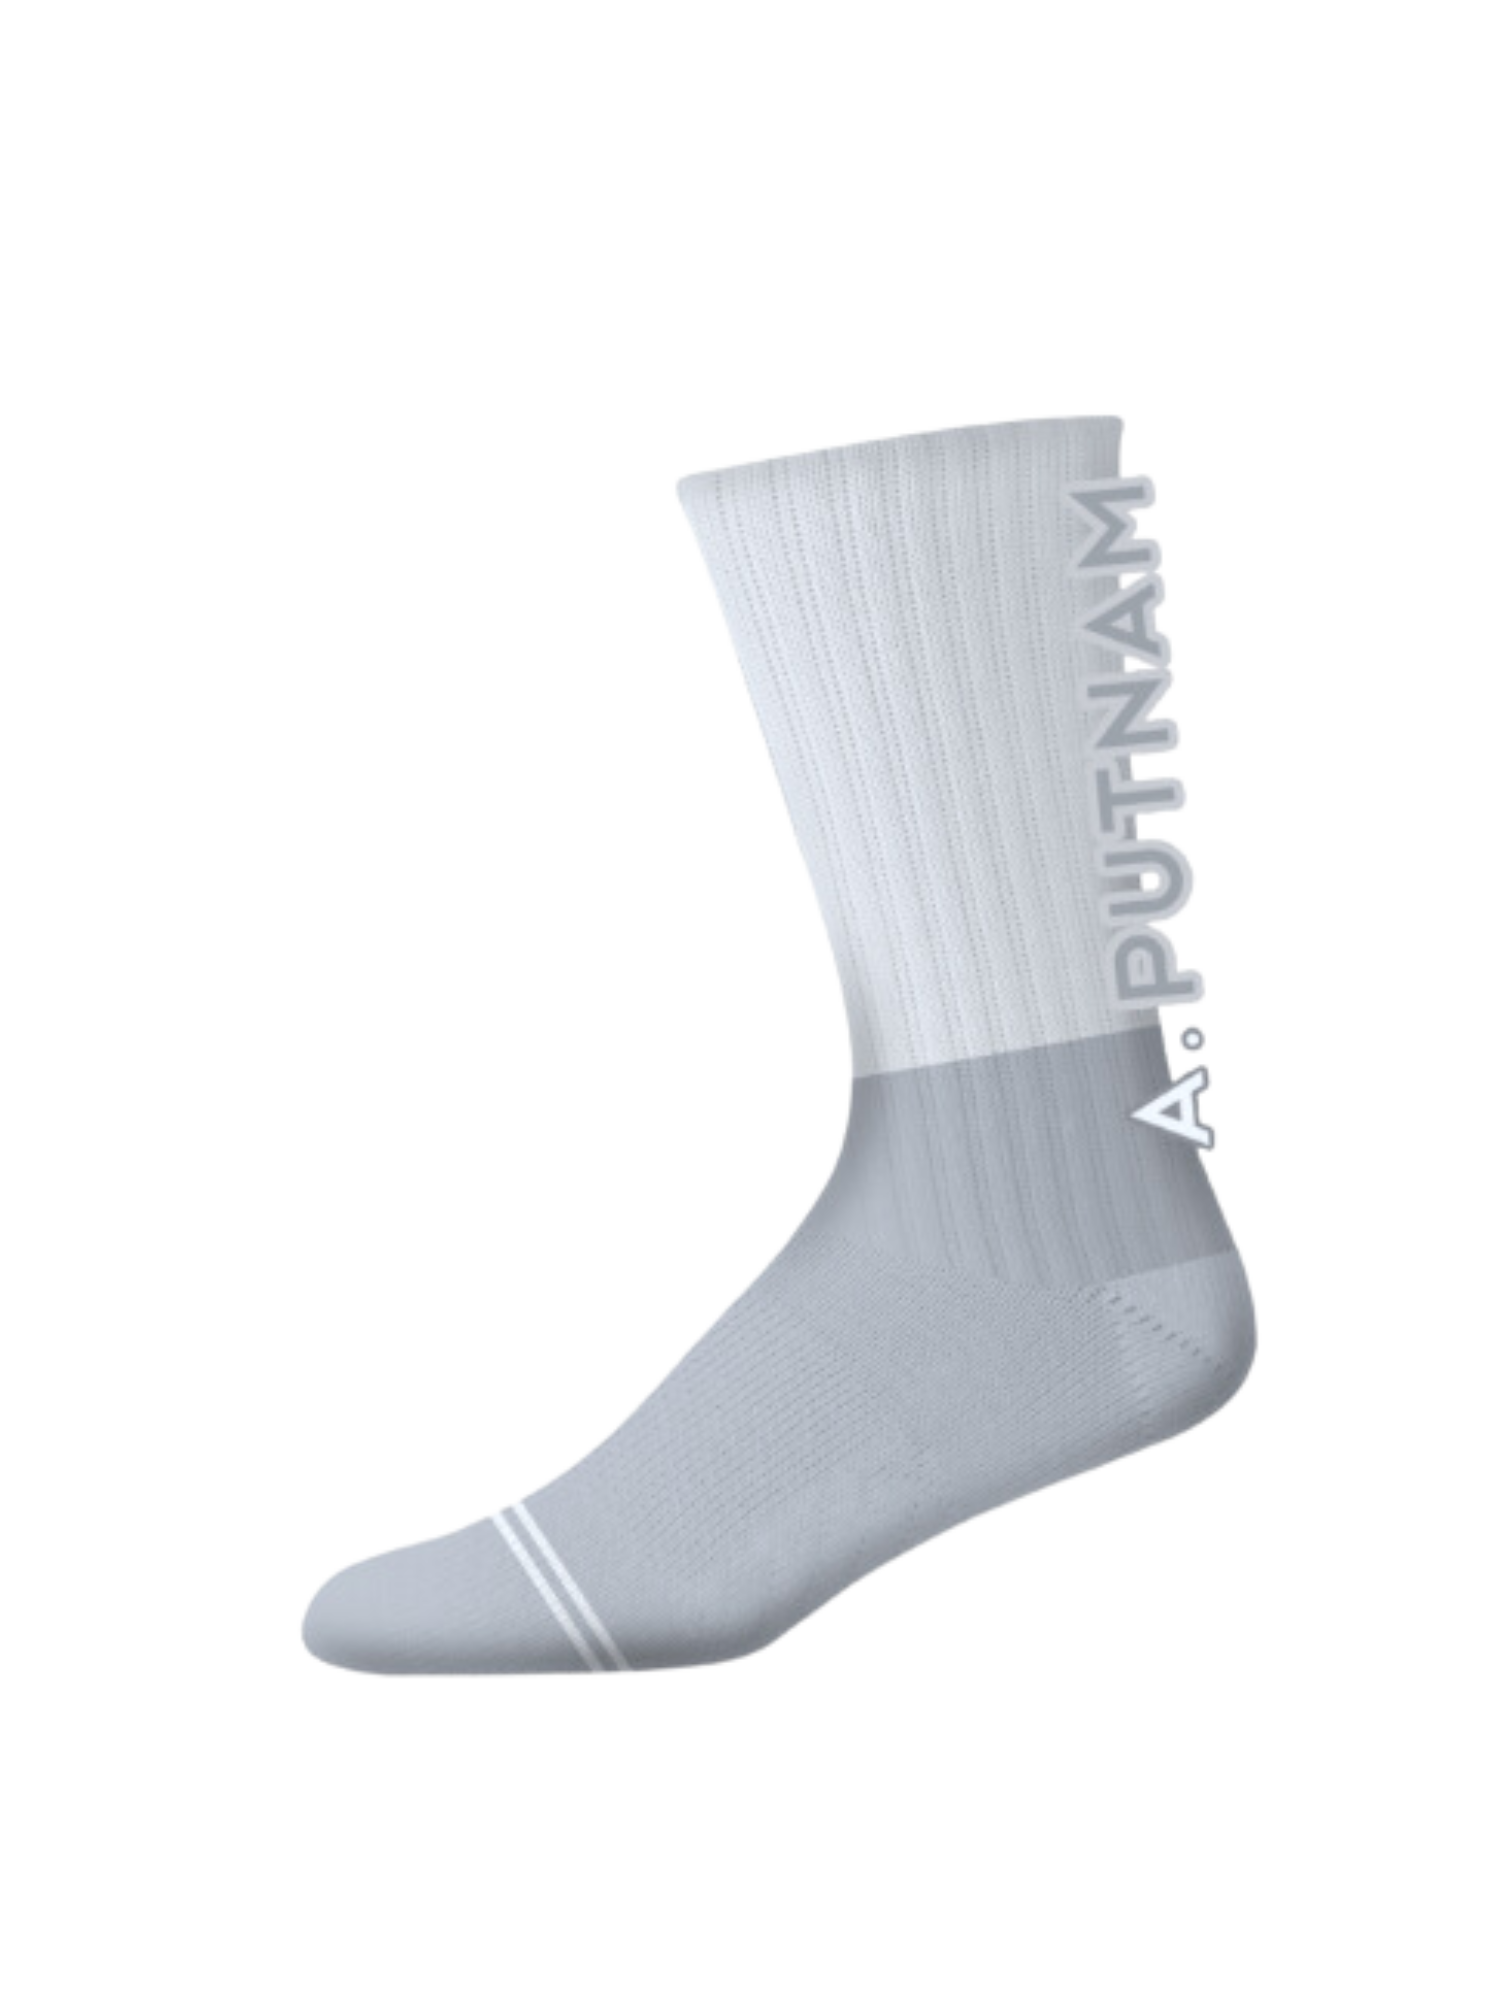 A. PUTNAM Socks